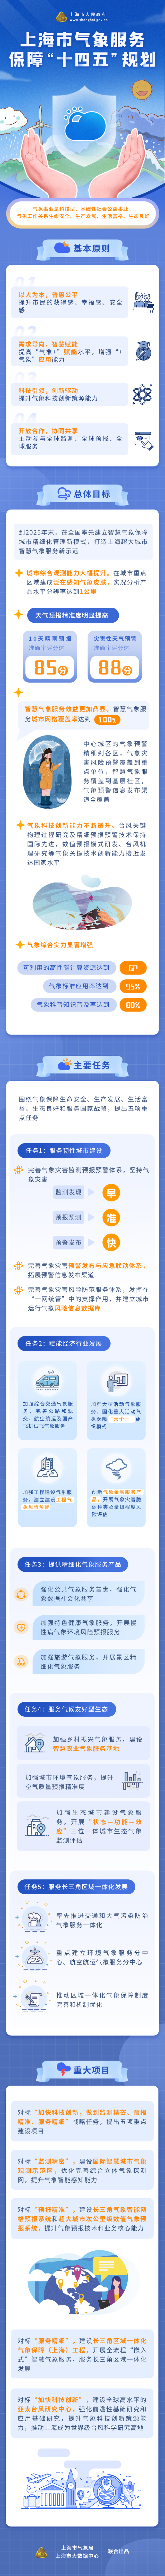 一图读懂《上海市气象服务保障“十四五”规划》.png